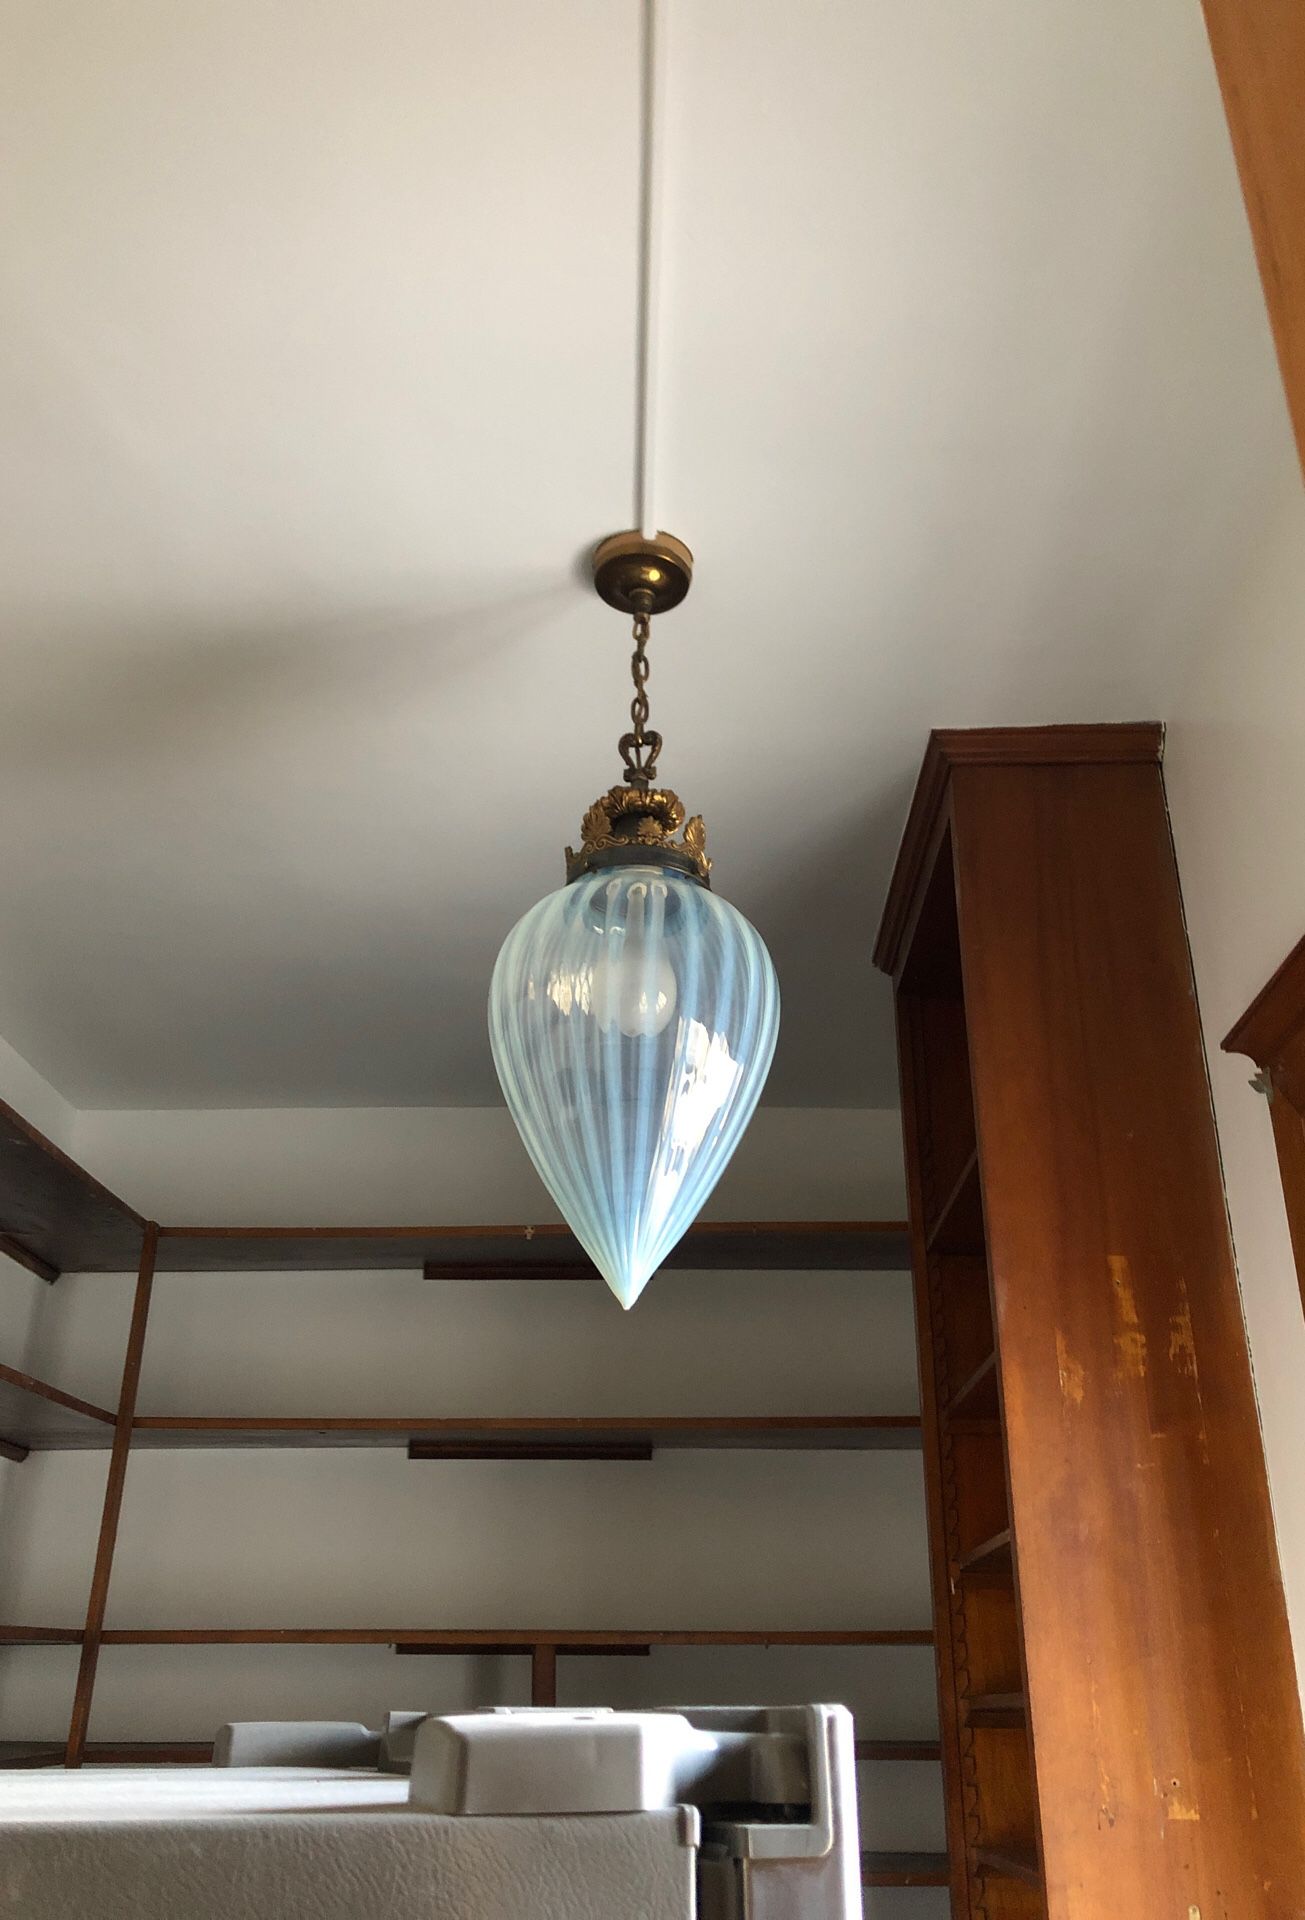 Tear-drop shaped milk glass globe light fixture